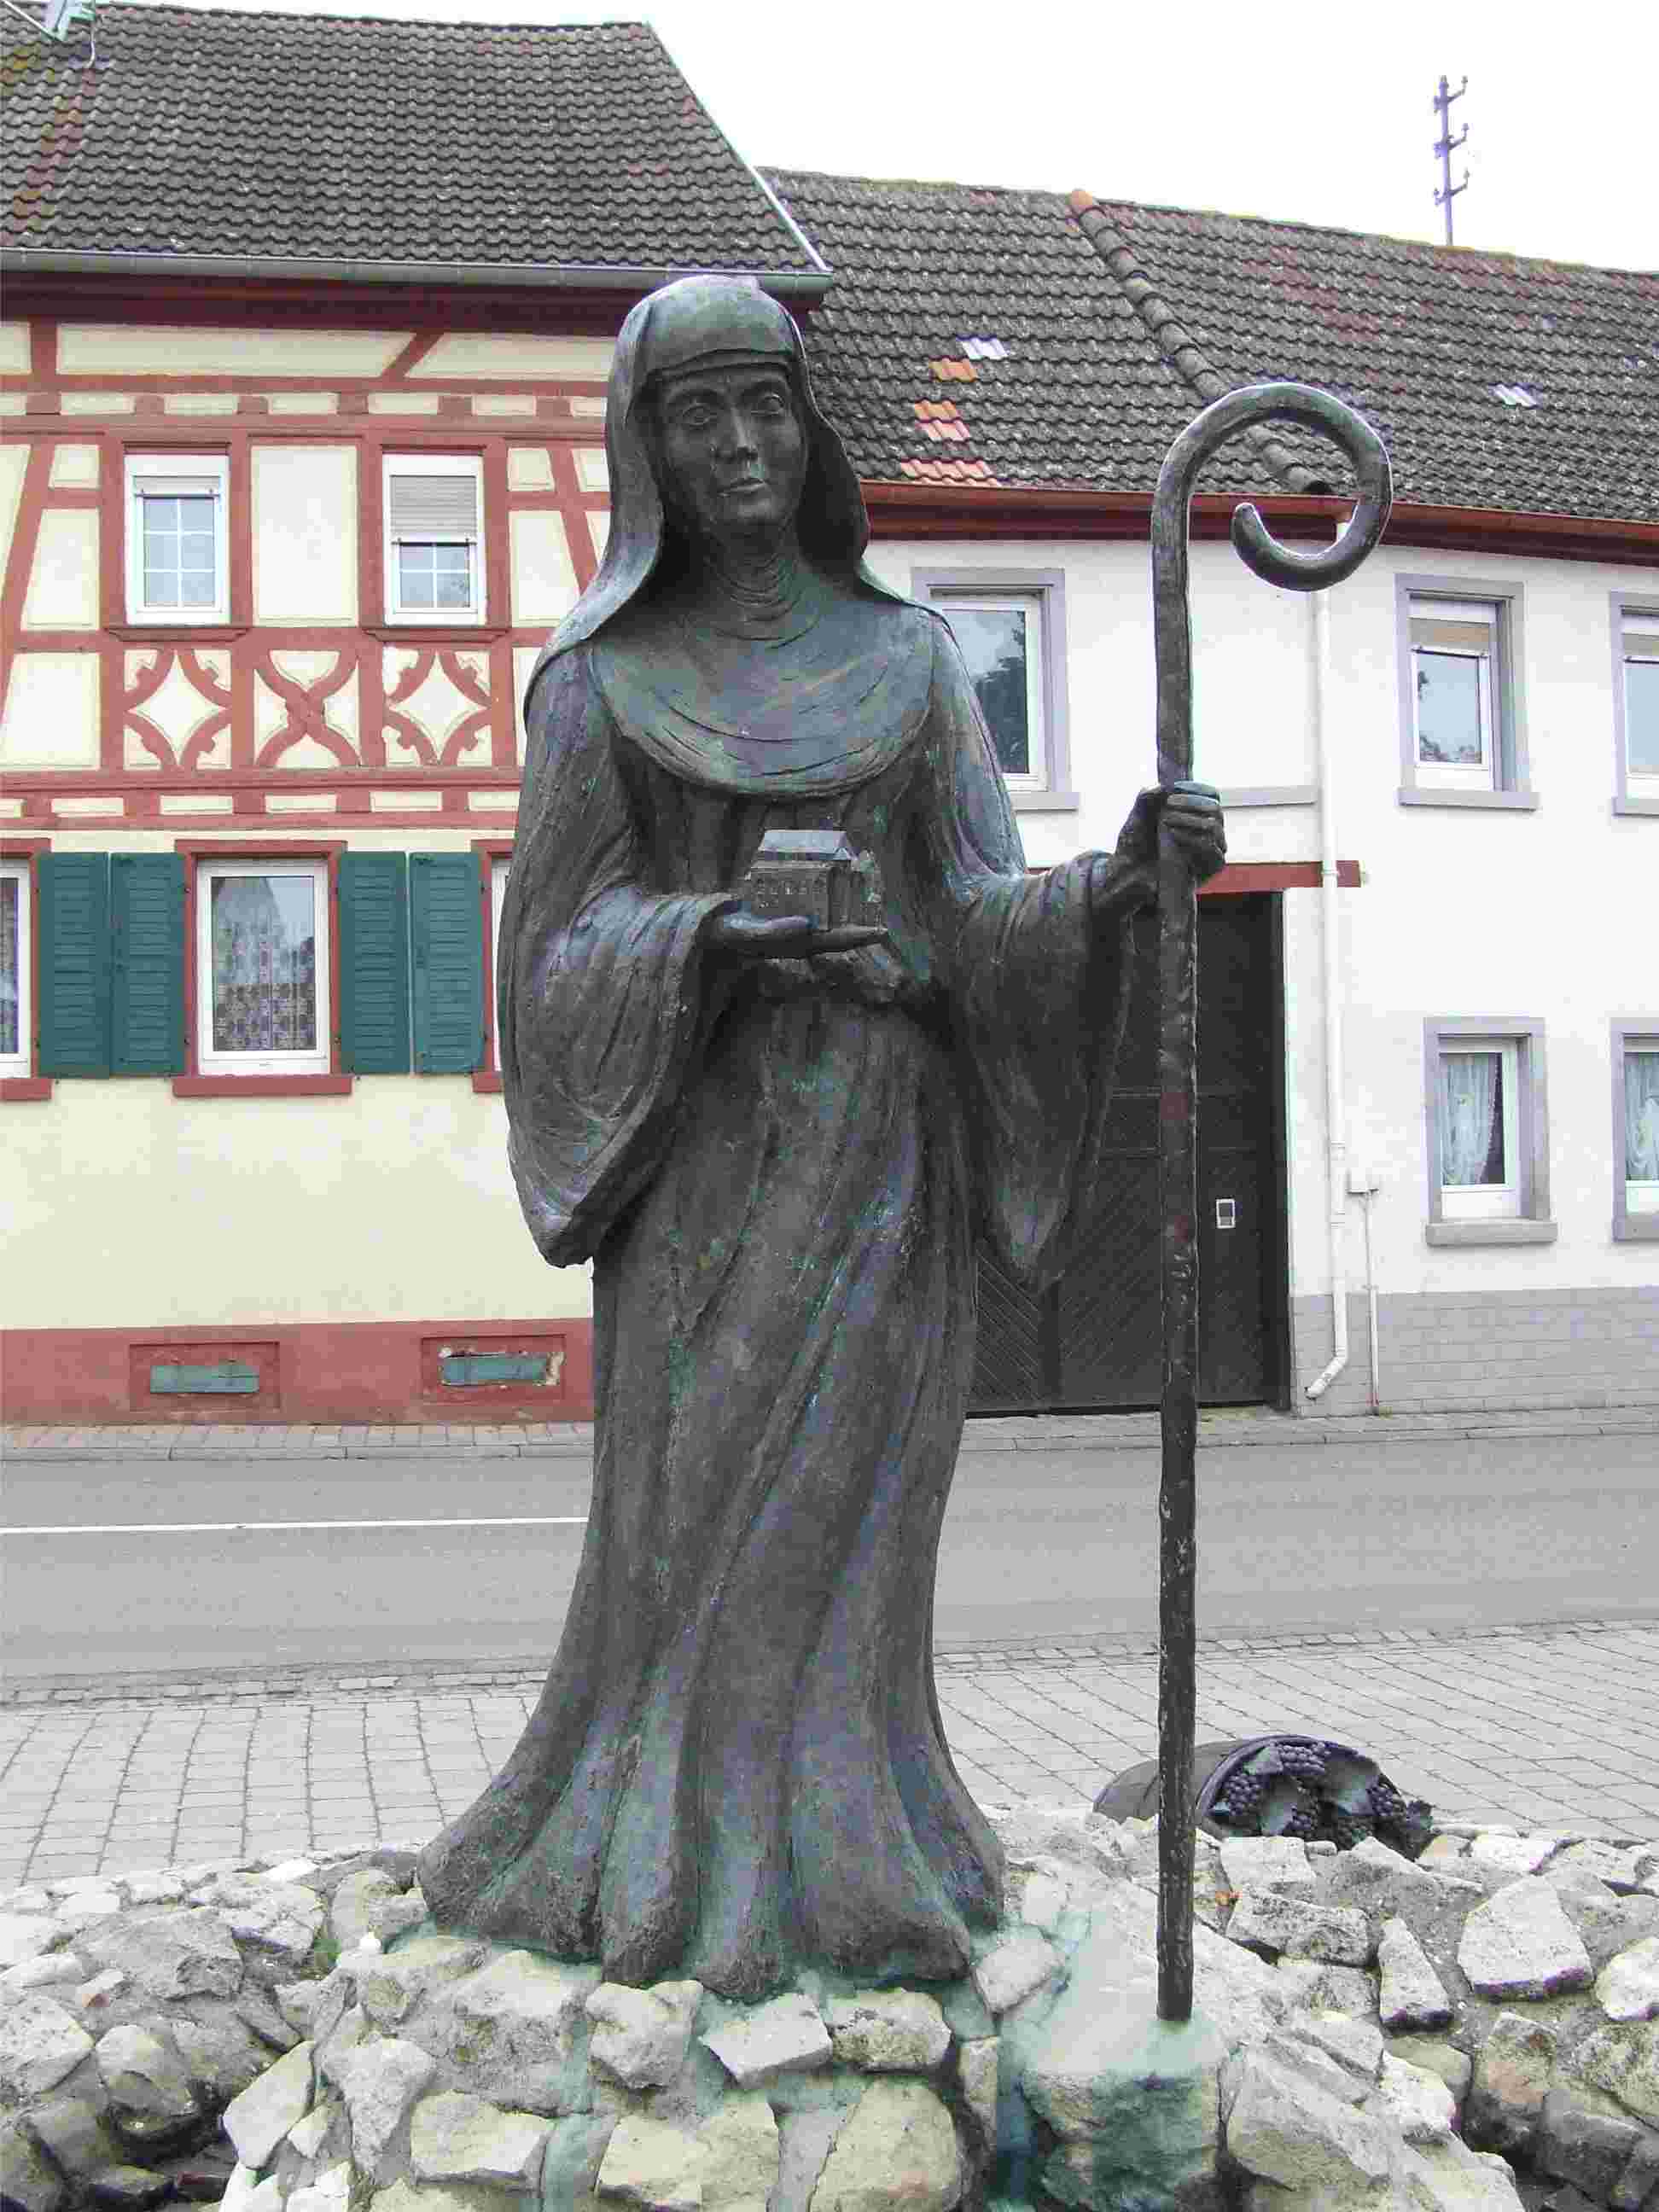 Brunnendenkmal in Schornsheim (c) Von Kandschwar, CC BY-SA 3.0, https://commons.wikimedia.org/w/index.php?curid=2826002